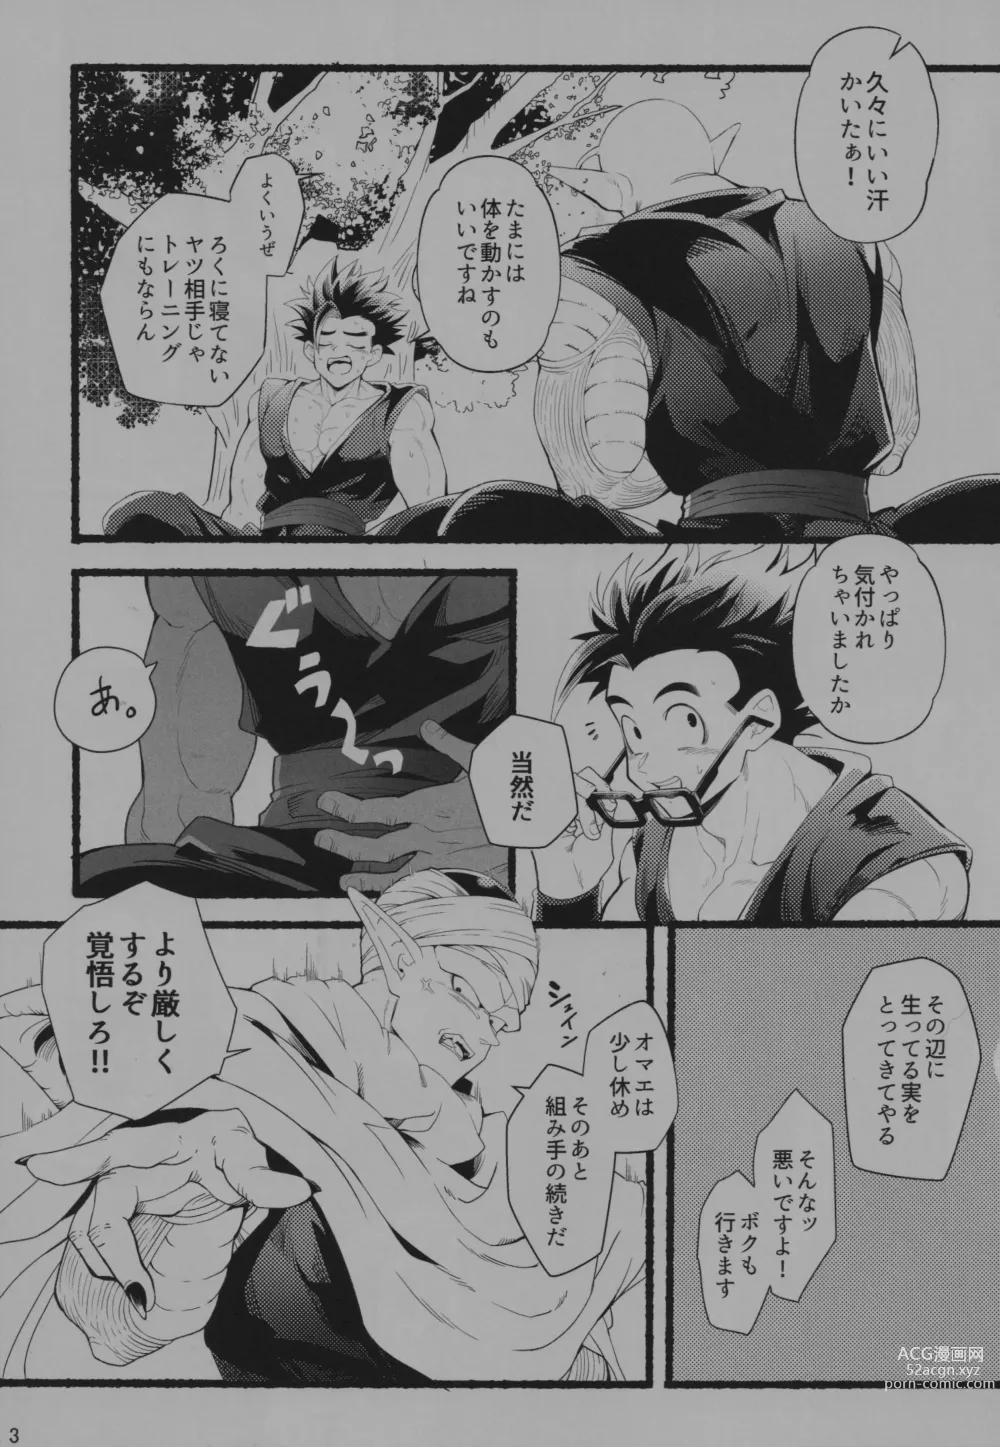 Page 2 of doujinshi Onaji Ana no Mujina